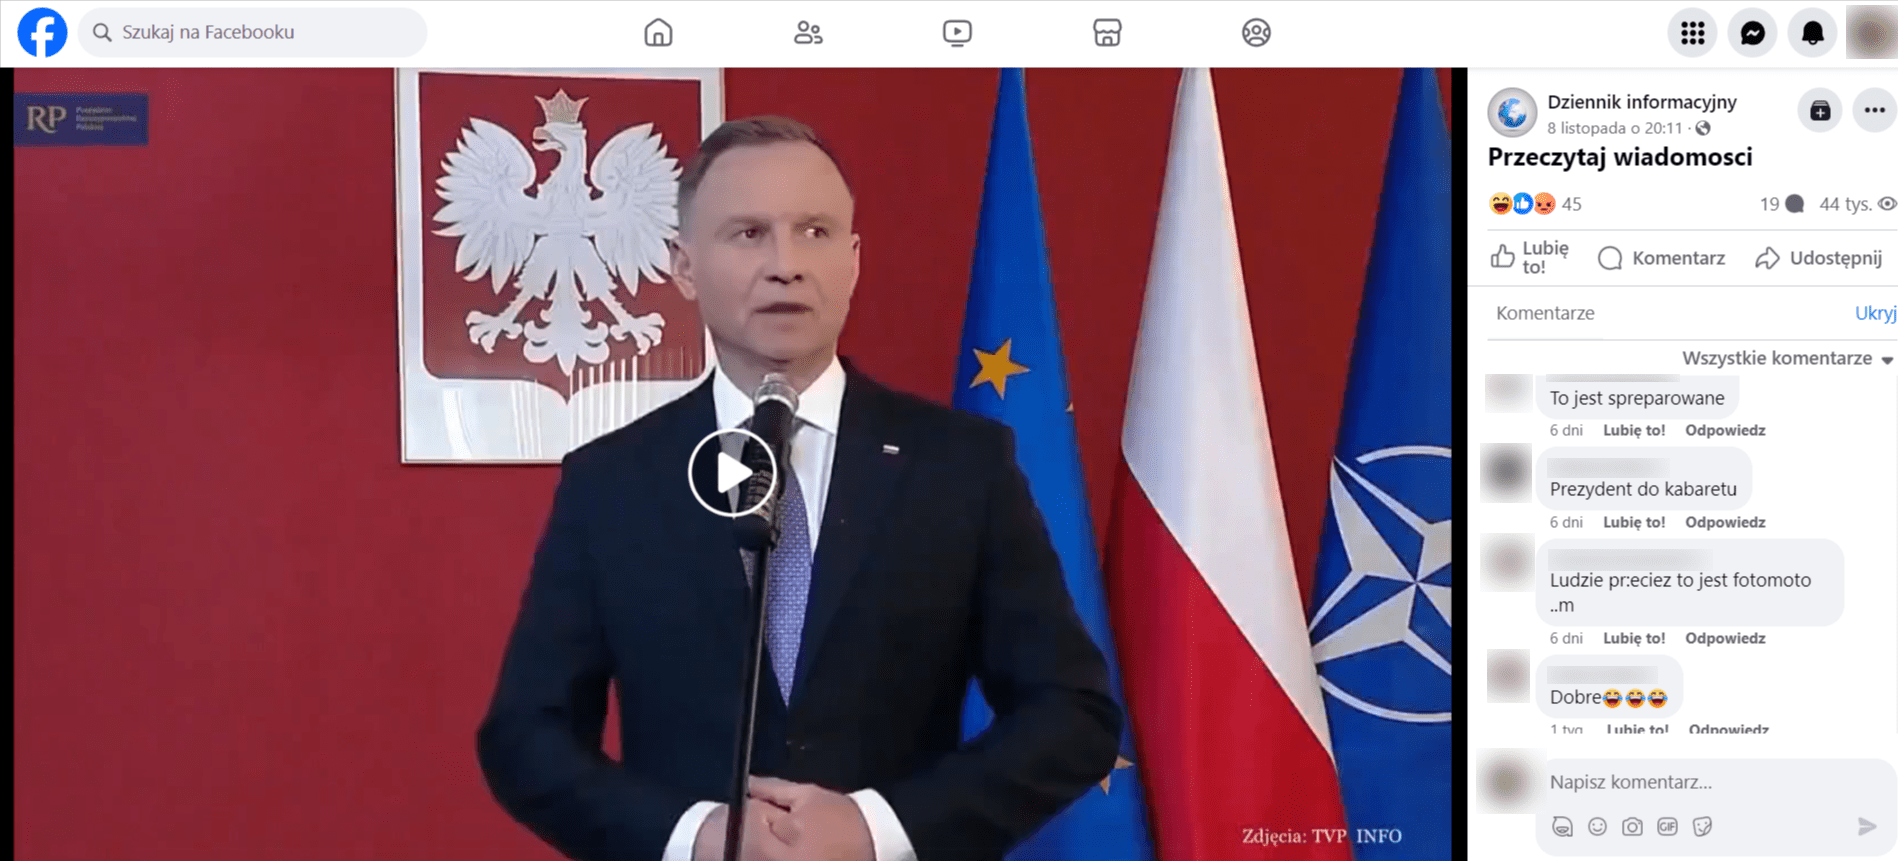 Zrzut ekranu posta na Facebooku. Znajduje się na nim prezydent Andrzej Duda na tle godła polskiego oraz trzech flag: UE, Polski i NATO.